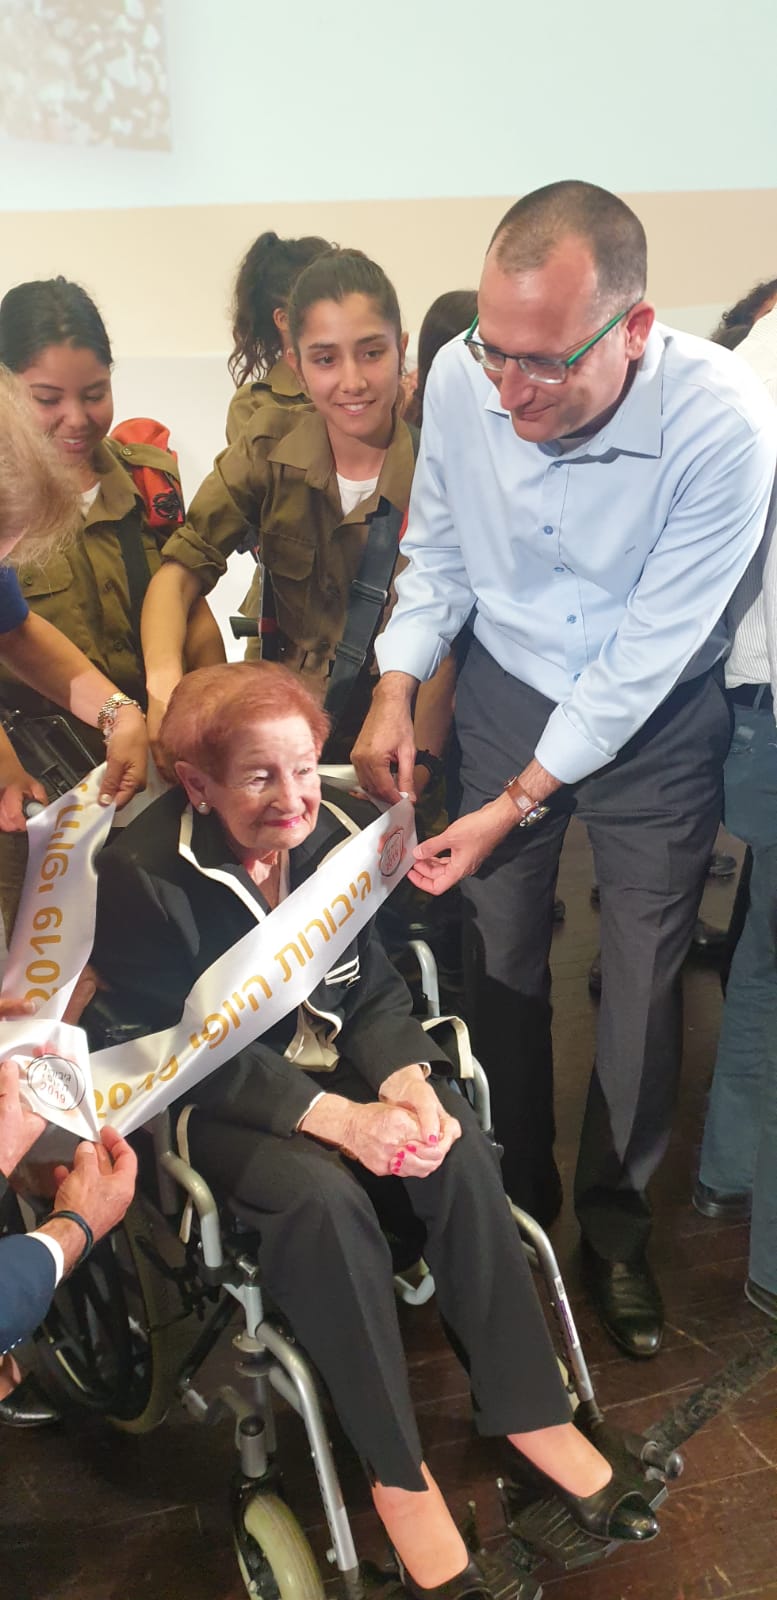 סוניה רוזנבלום, שורדת שואה בת 98 תושבת גבעתיים, היא גיבורת היופי לשנת 2019